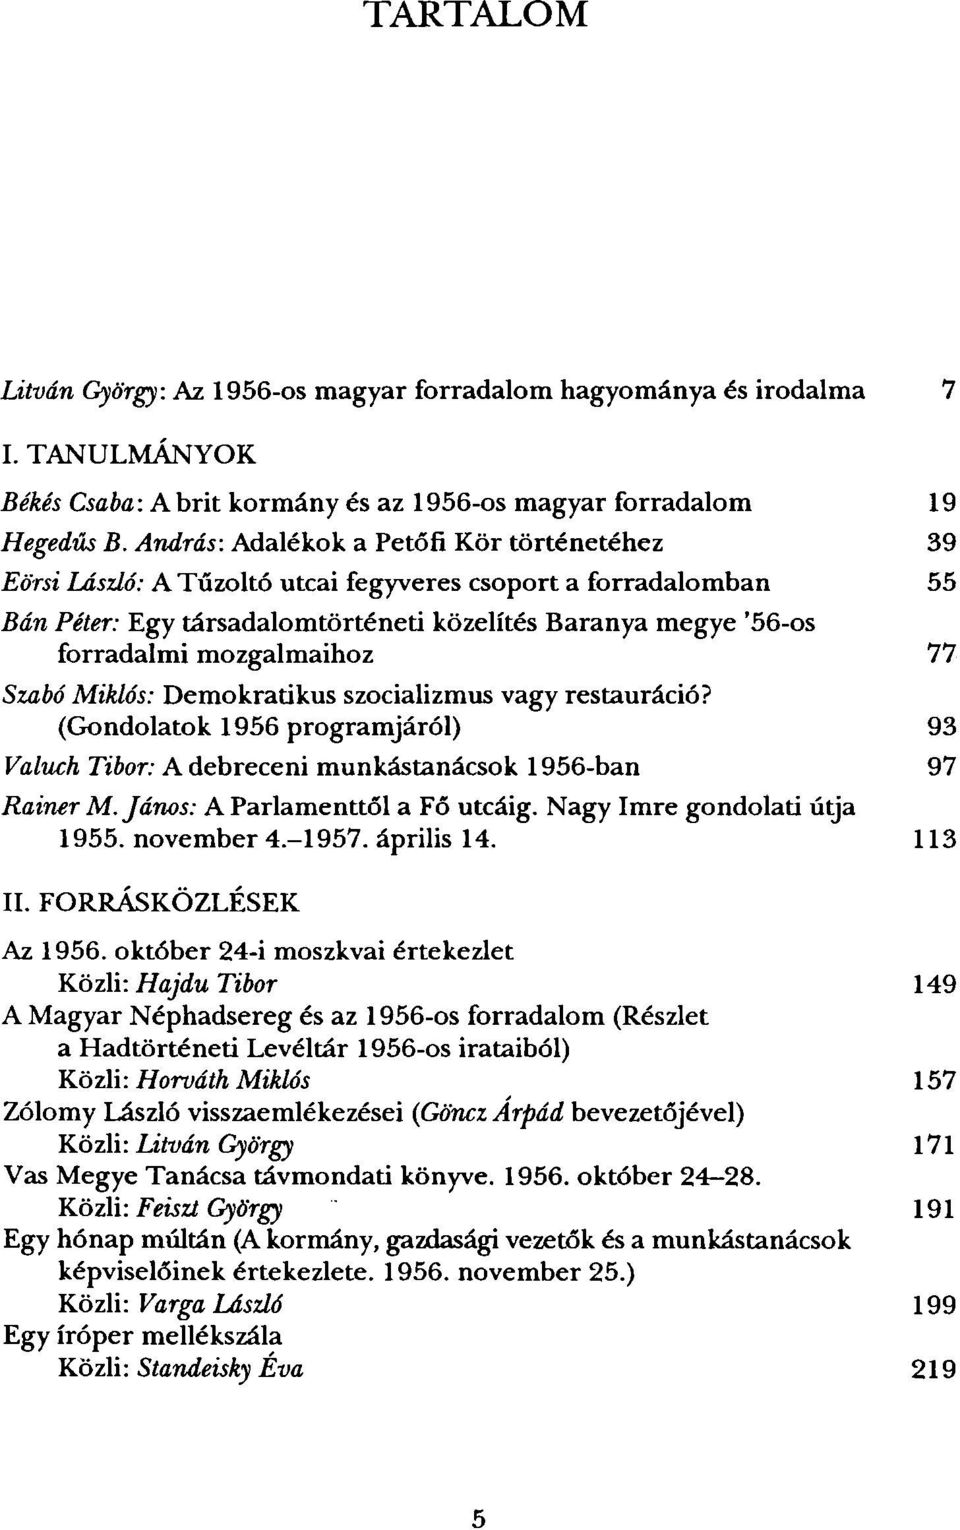 mozgalmaihoz 77 Szabó Miklós: Demokratikus szocializmus vagy restauráció? (Gondolatok 1956 programjáról) 93 Valuch Tibor: A debreceni munkástanácsok 1956-ban 97 Rainer M.